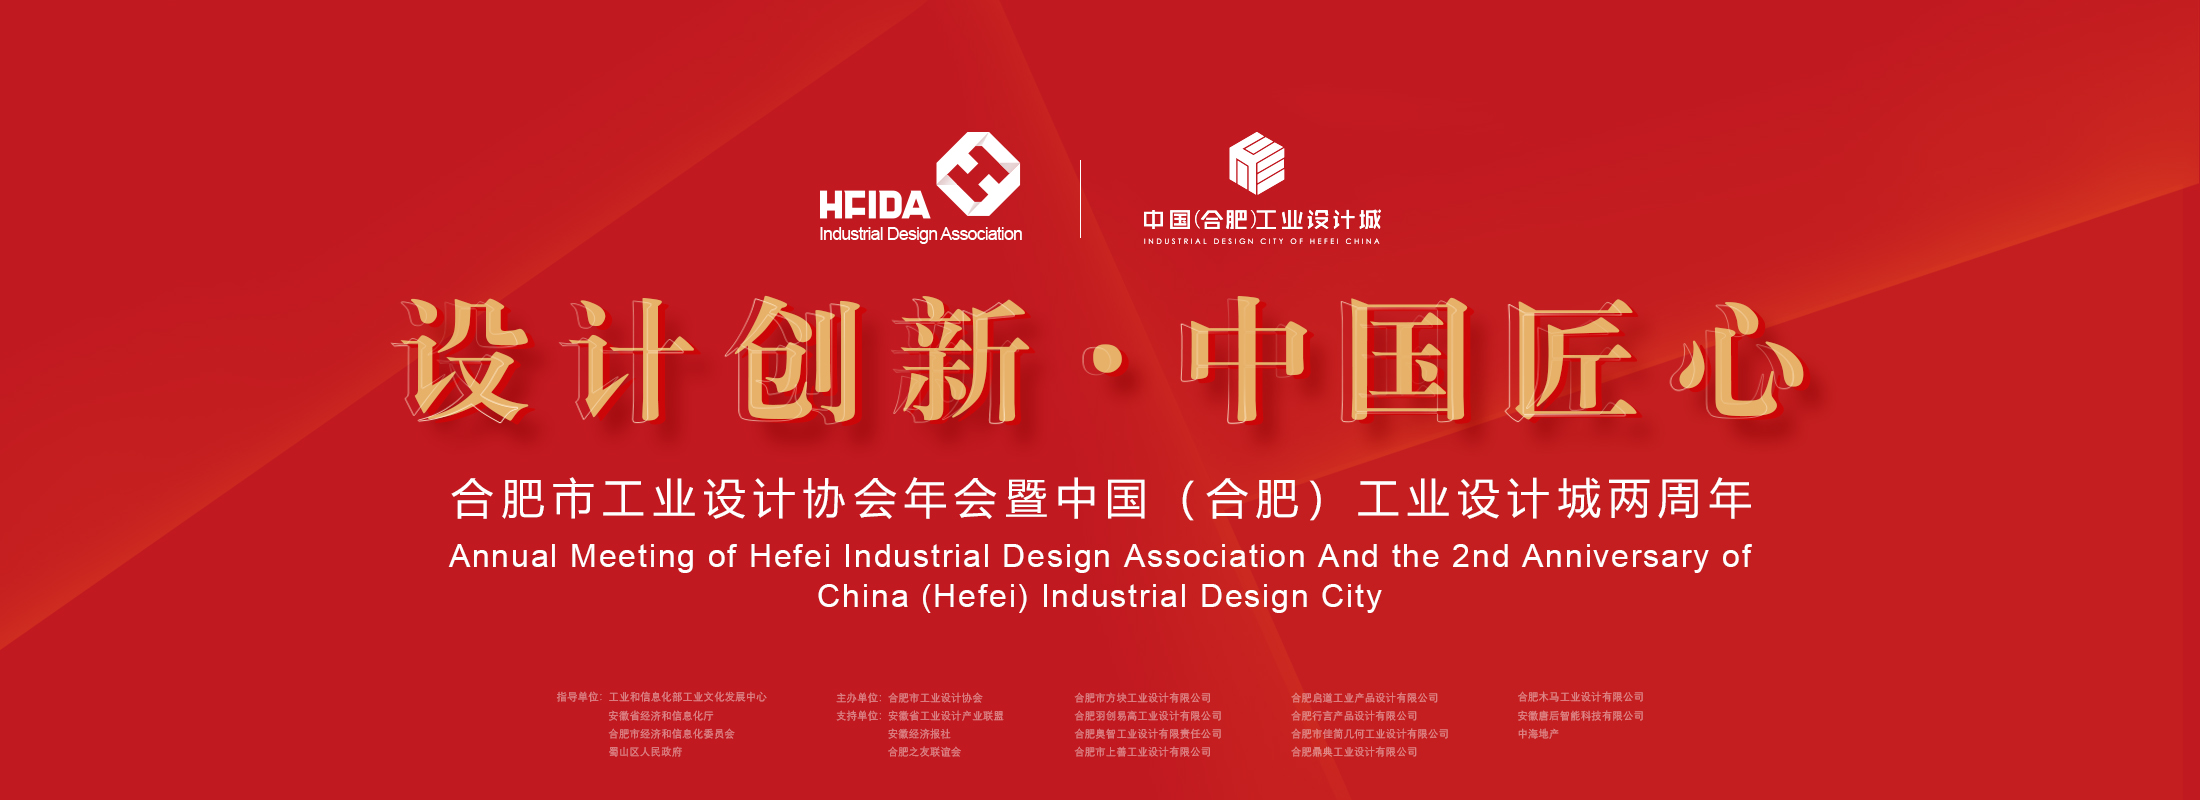 合肥市工业设计协会年会暨中国（合肥）工业设计城两周年庆典启幕-中国网地产